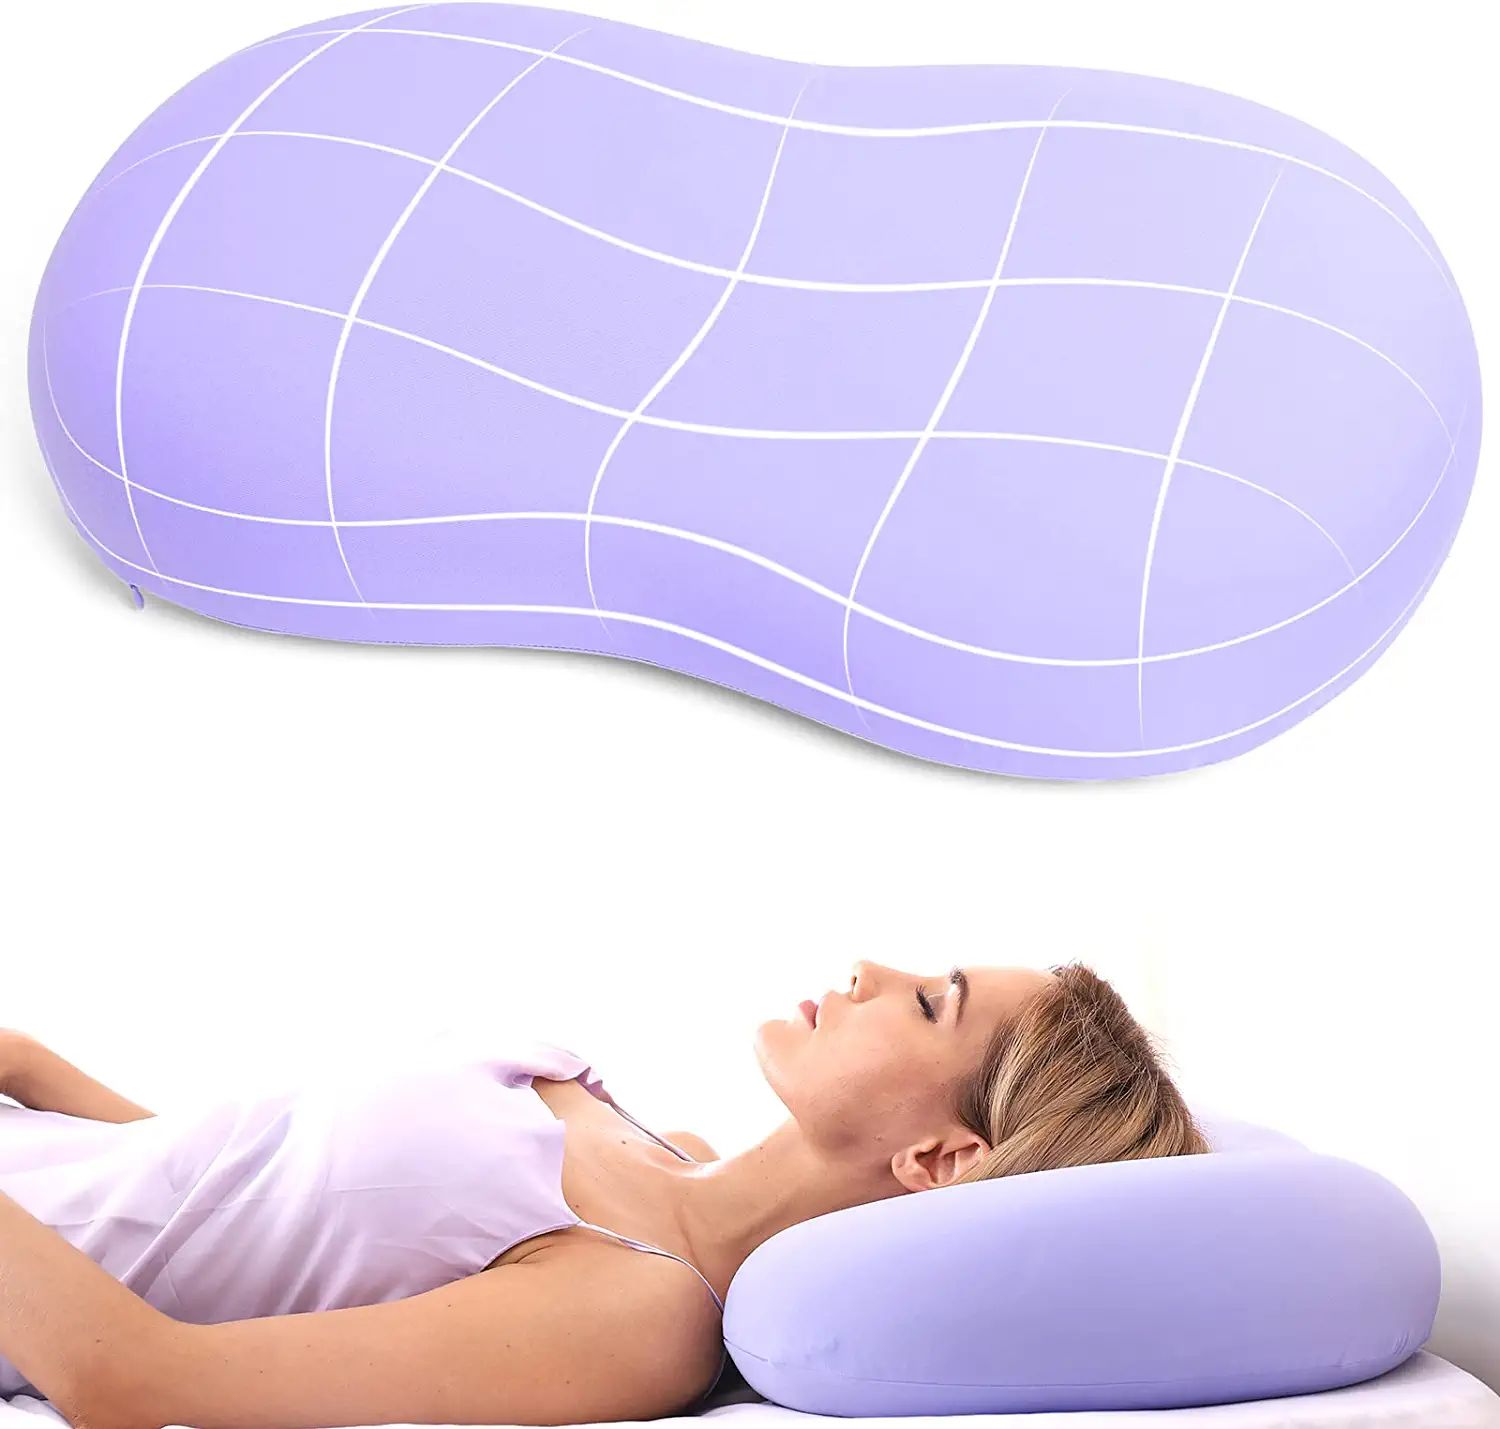 Как правильно спать на анатомической подушке фото